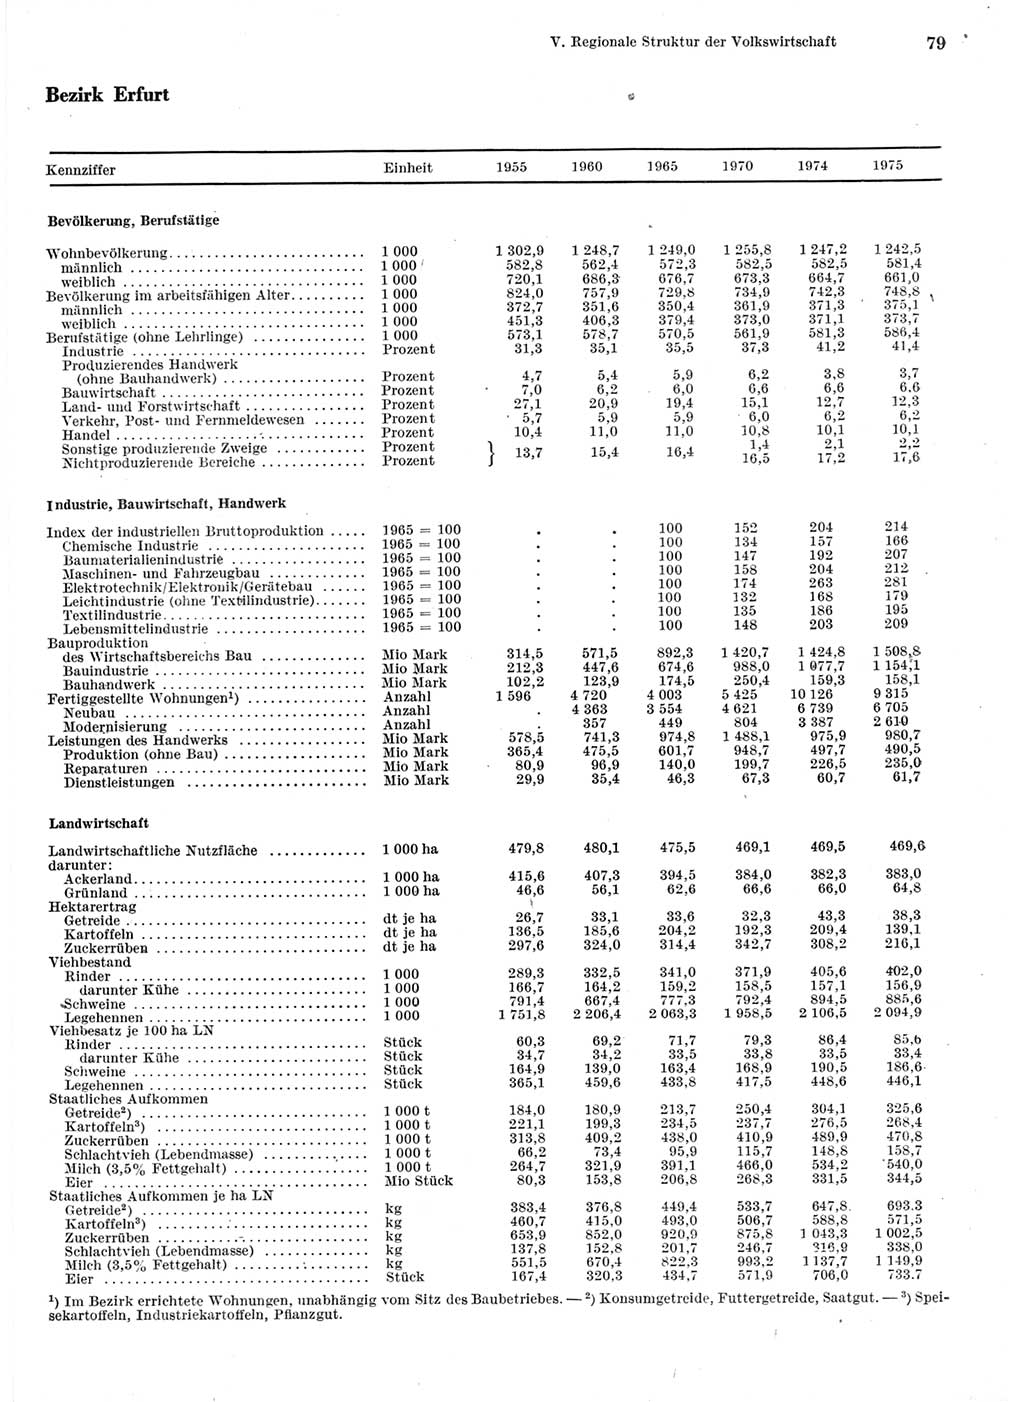 Statistisches Jahrbuch der Deutschen Demokratischen Republik (DDR) 1976, Seite 79 (Stat. Jb. DDR 1976, S. 79)